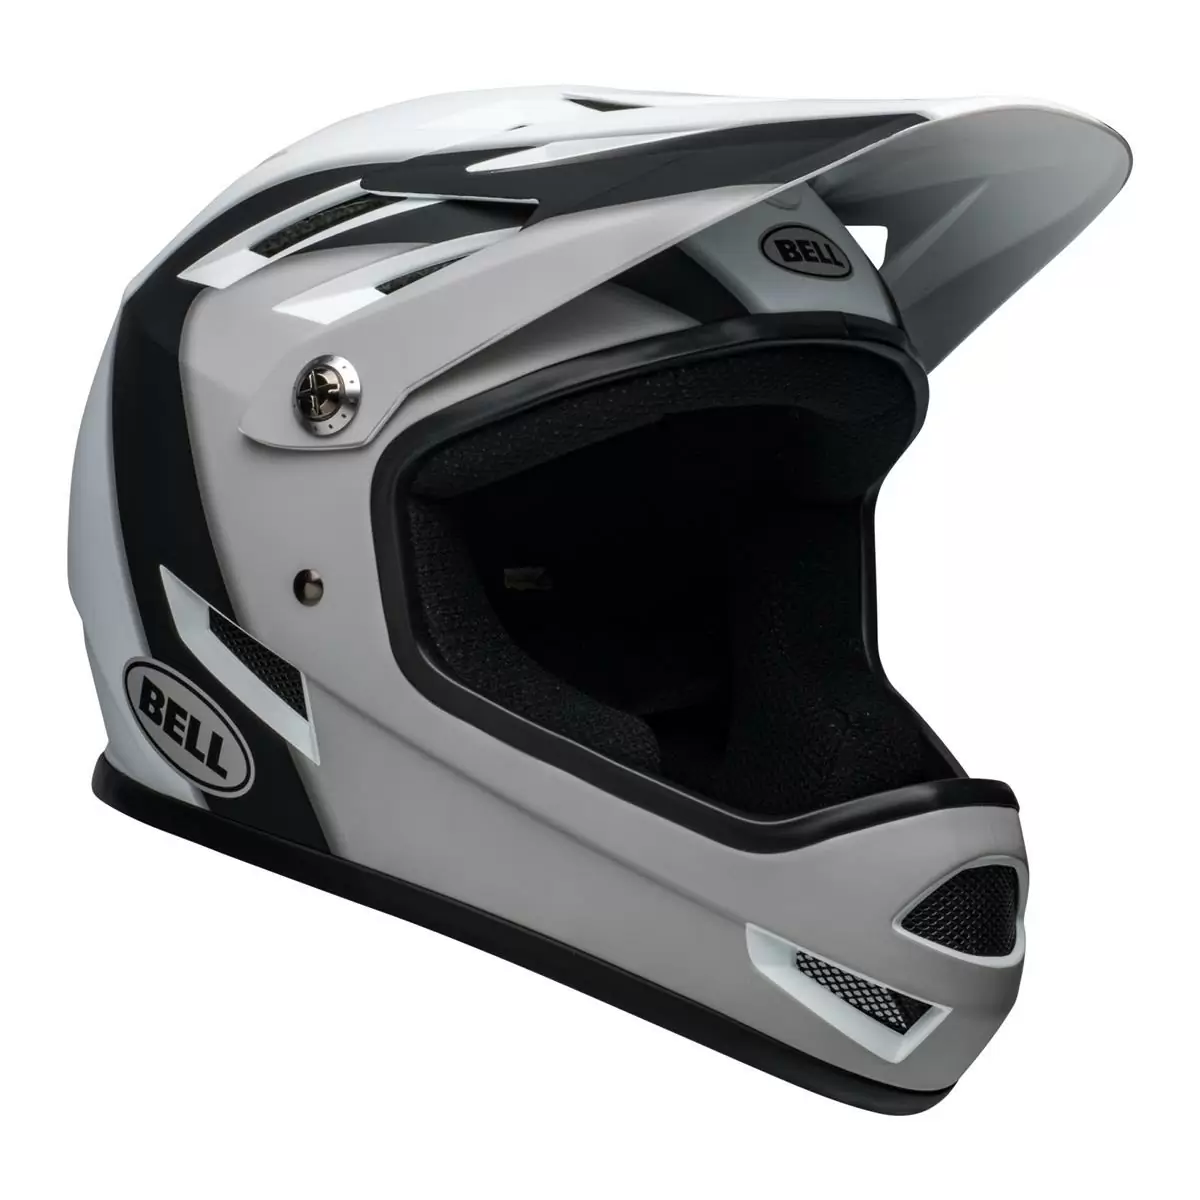 Sanction Full Face Helmet Black/White Size XS (48-51cm) #1